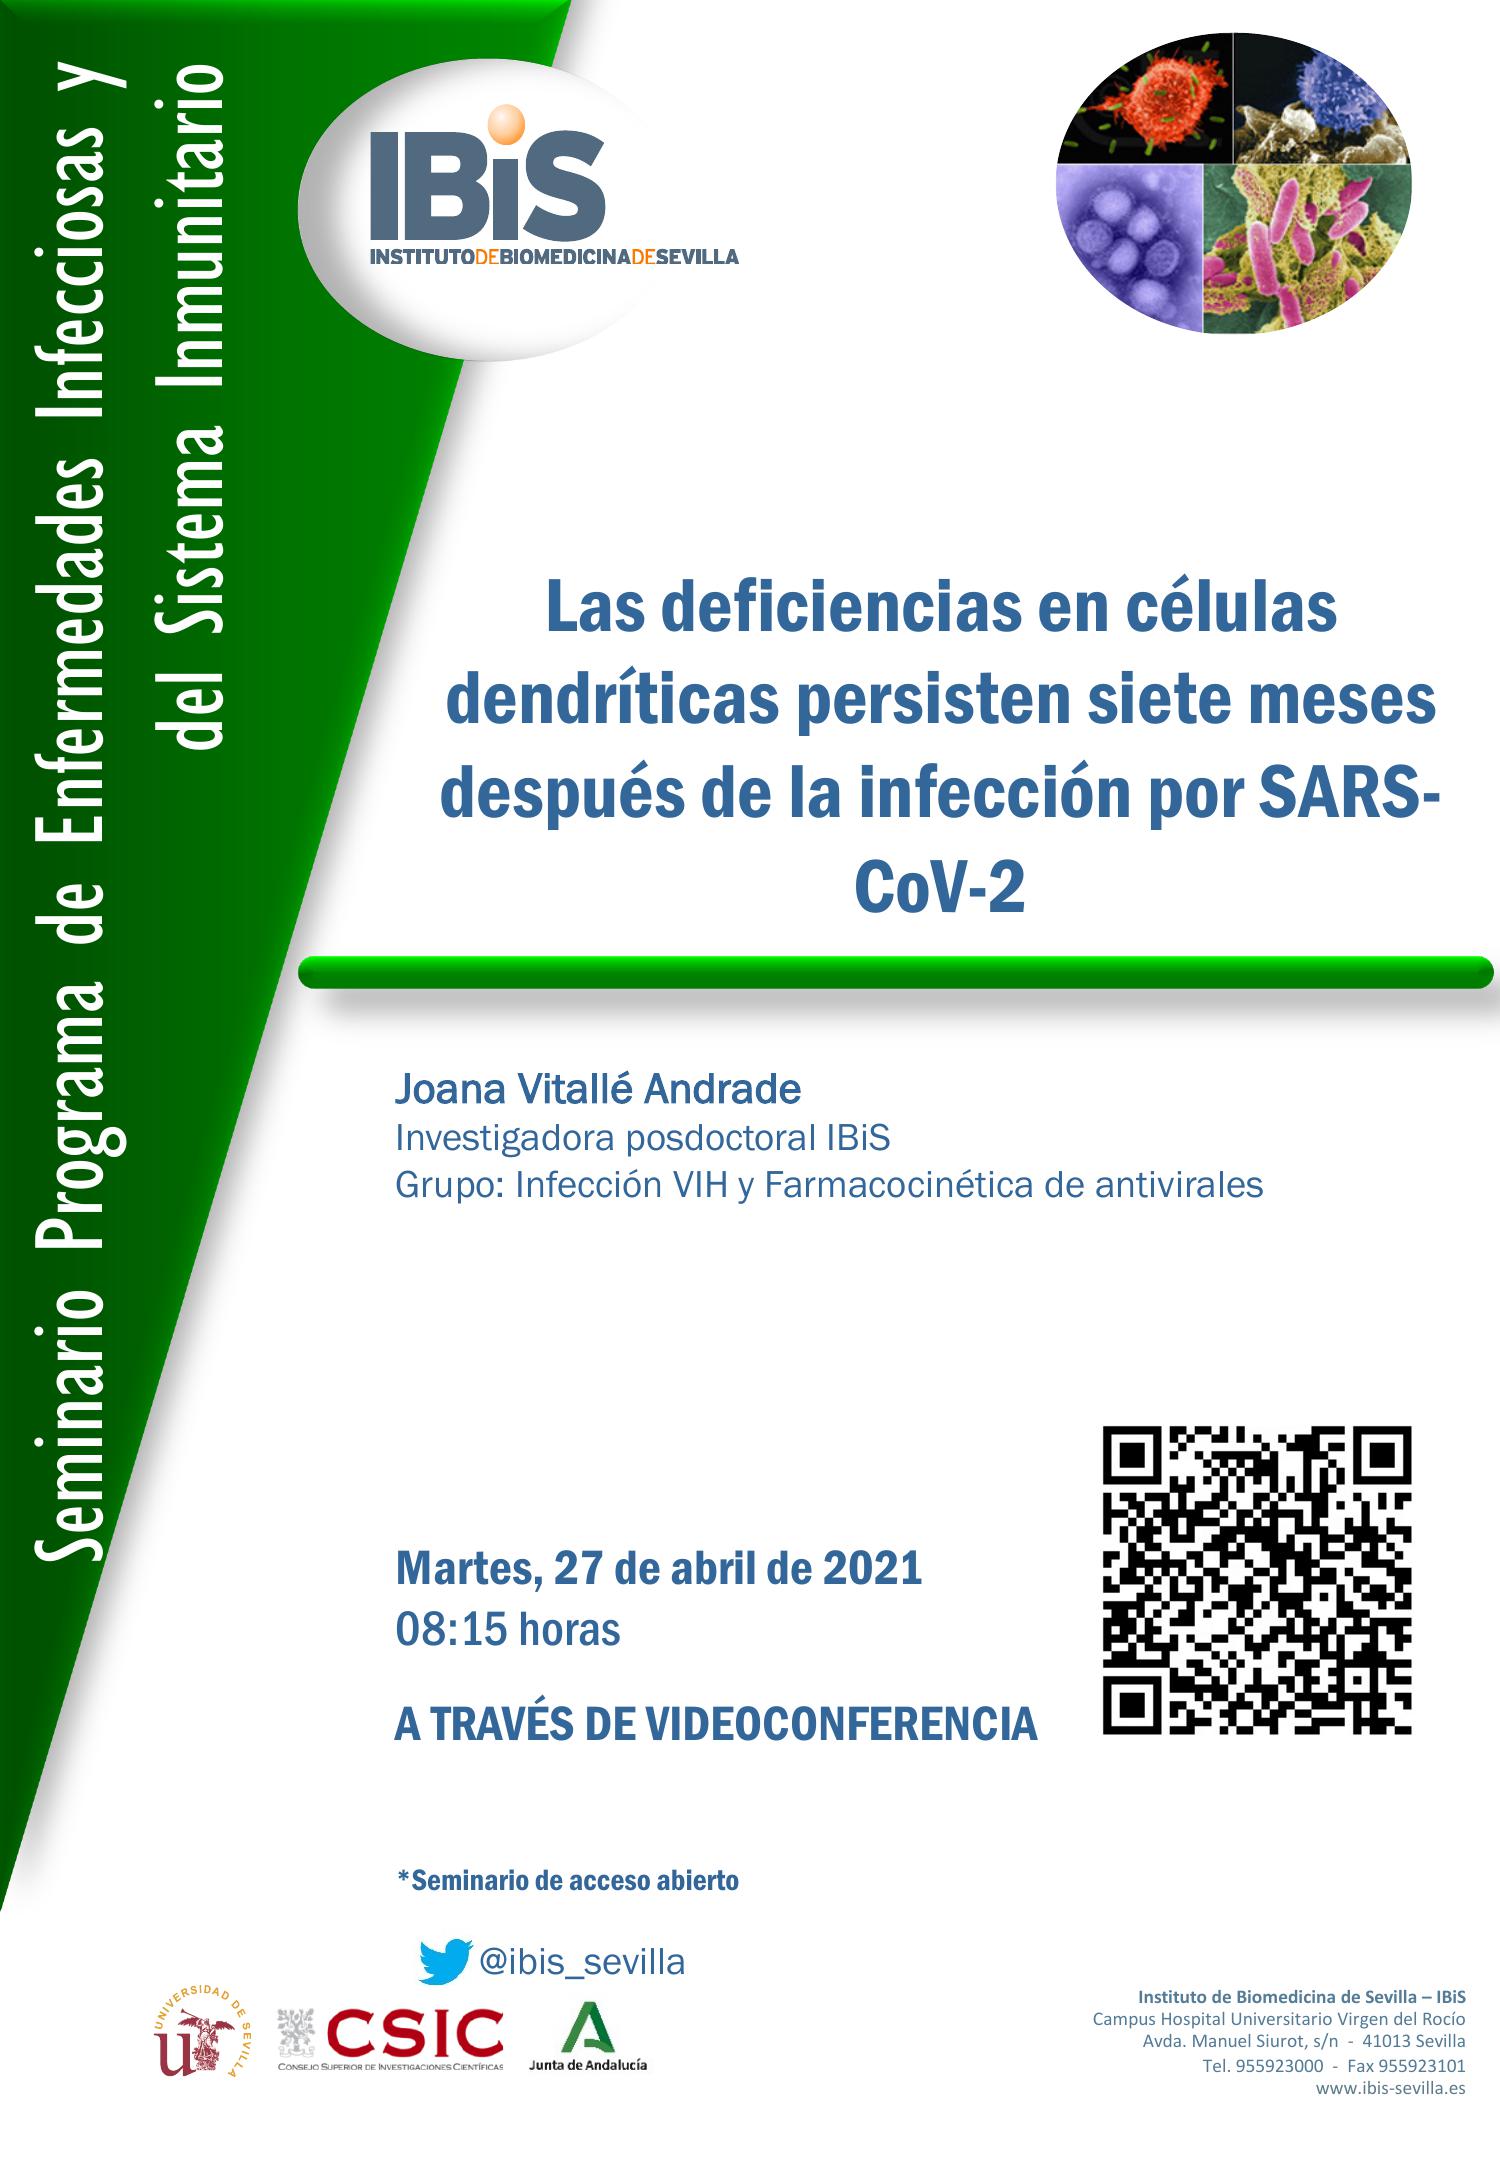 Poster: Las deficiencias en células dendríticas persisten siete meses después de la infección por SARS-CoV-2